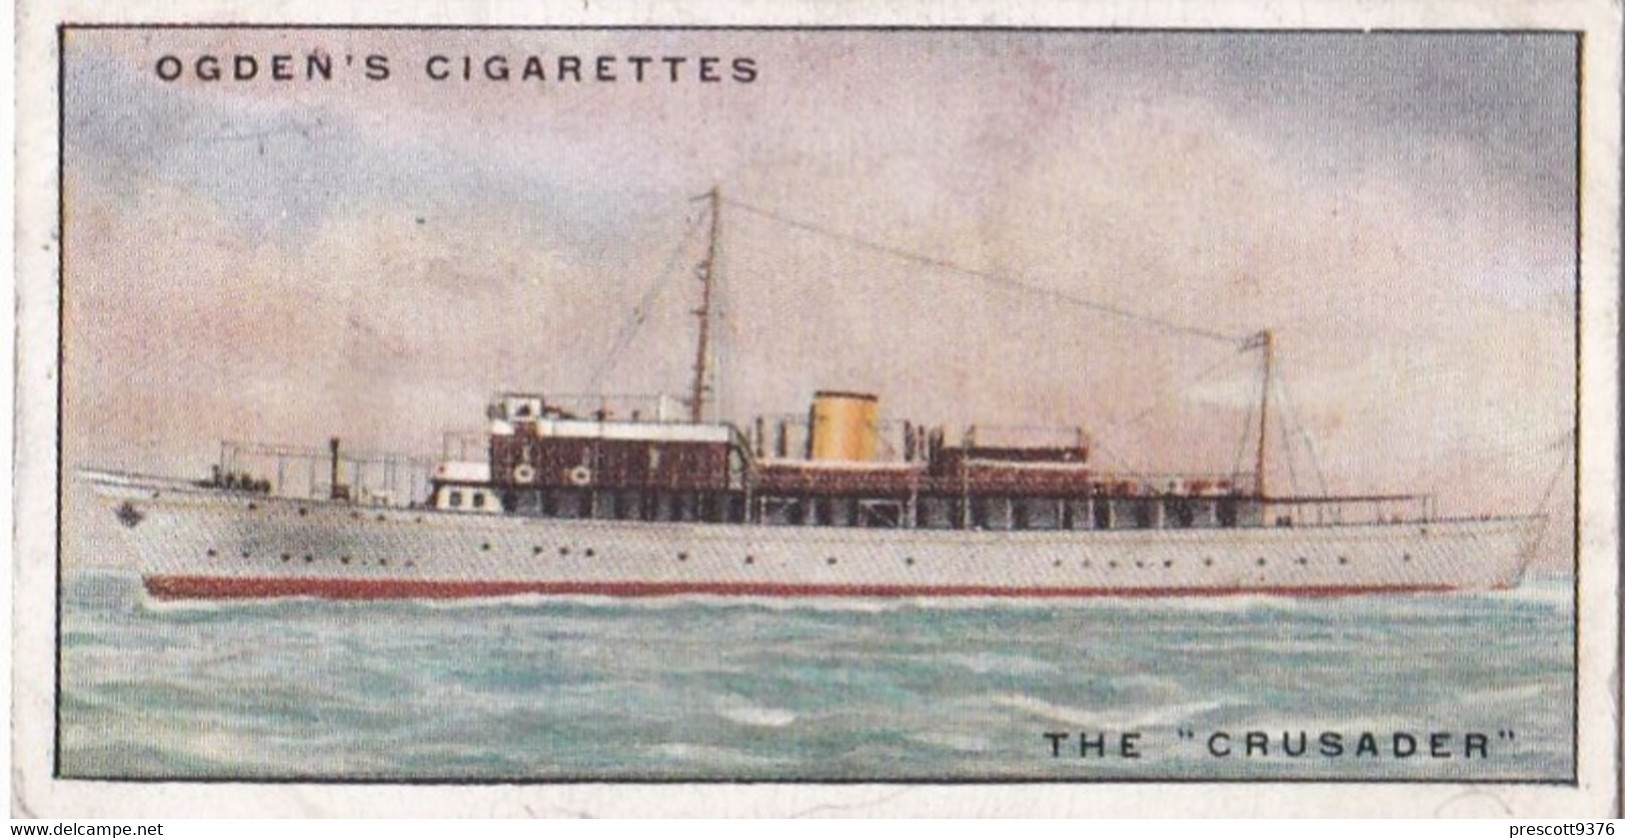 Yachts & Motor Boats 1931 - 14 The Crusader  - Ogdens  Cigarette Card - Original  - Ships - Sealife - Ogden's